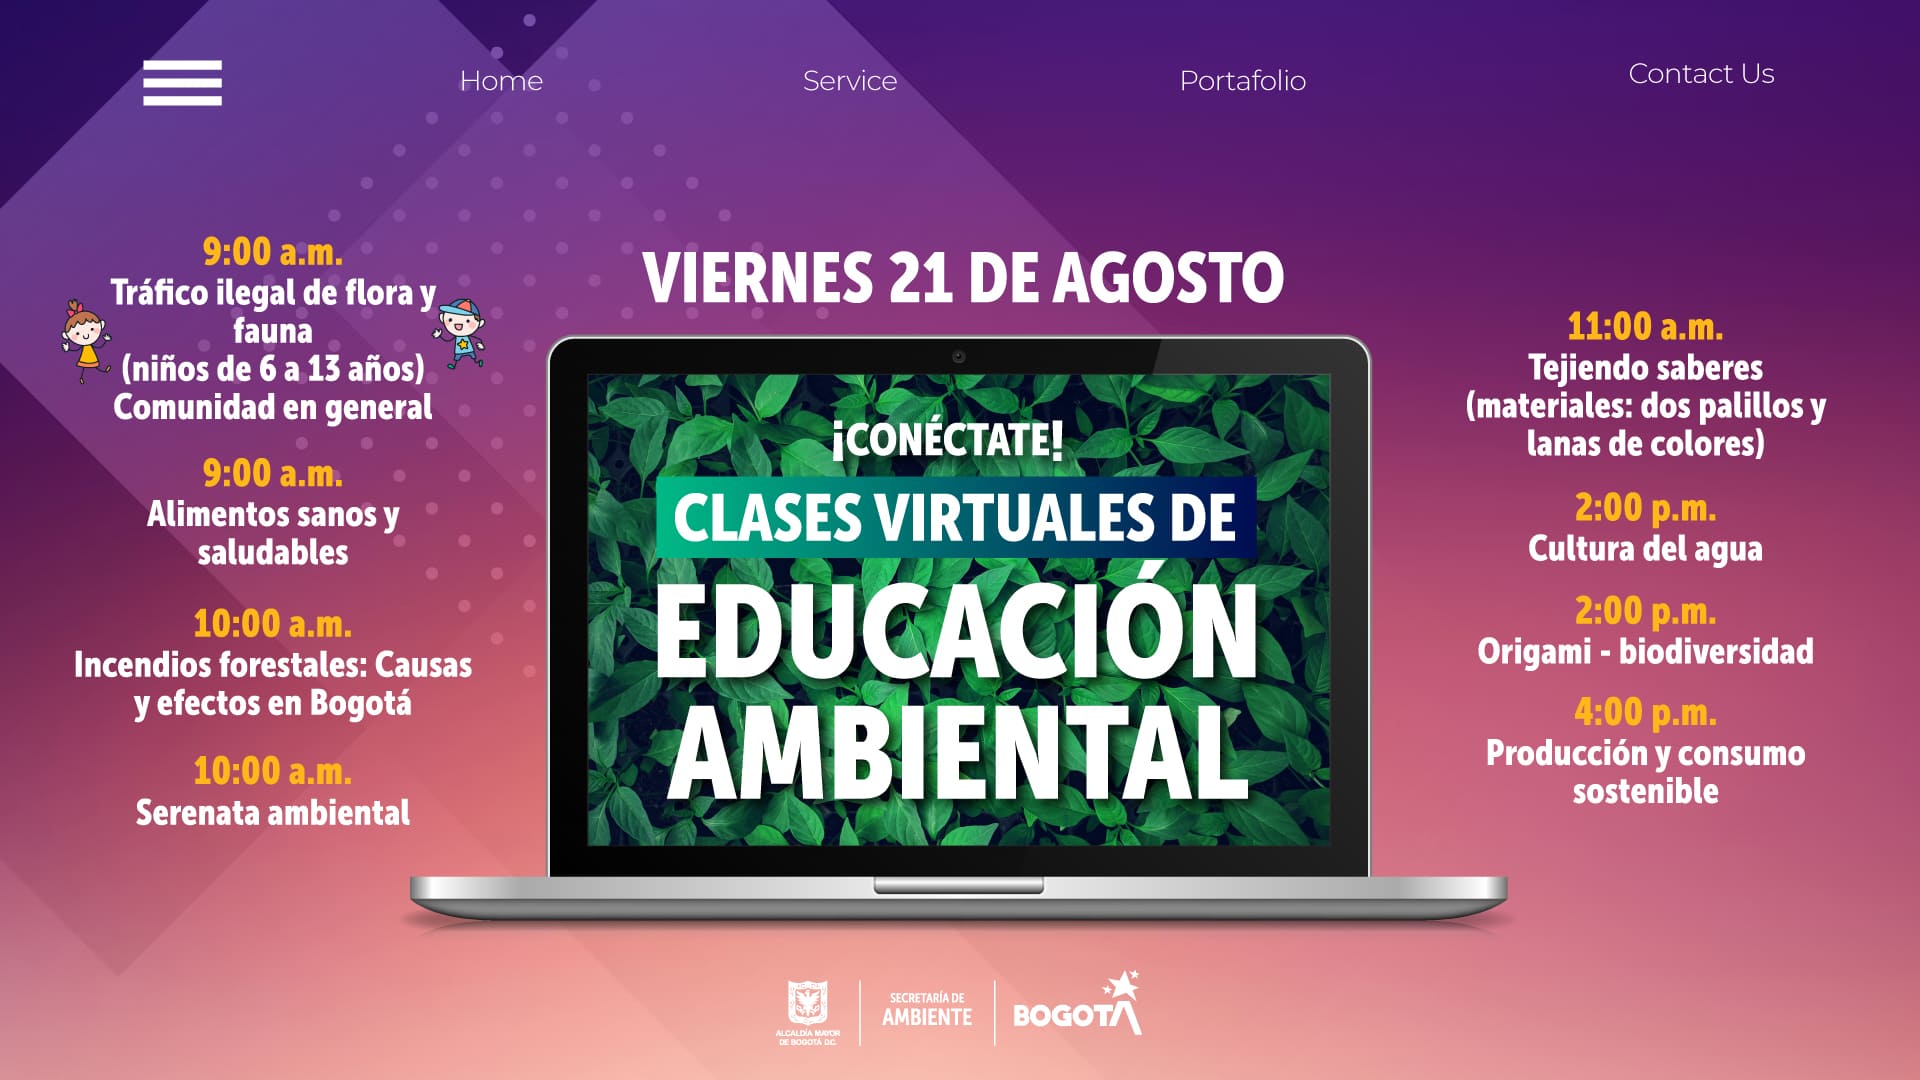 Clases virtuales educación ambiental